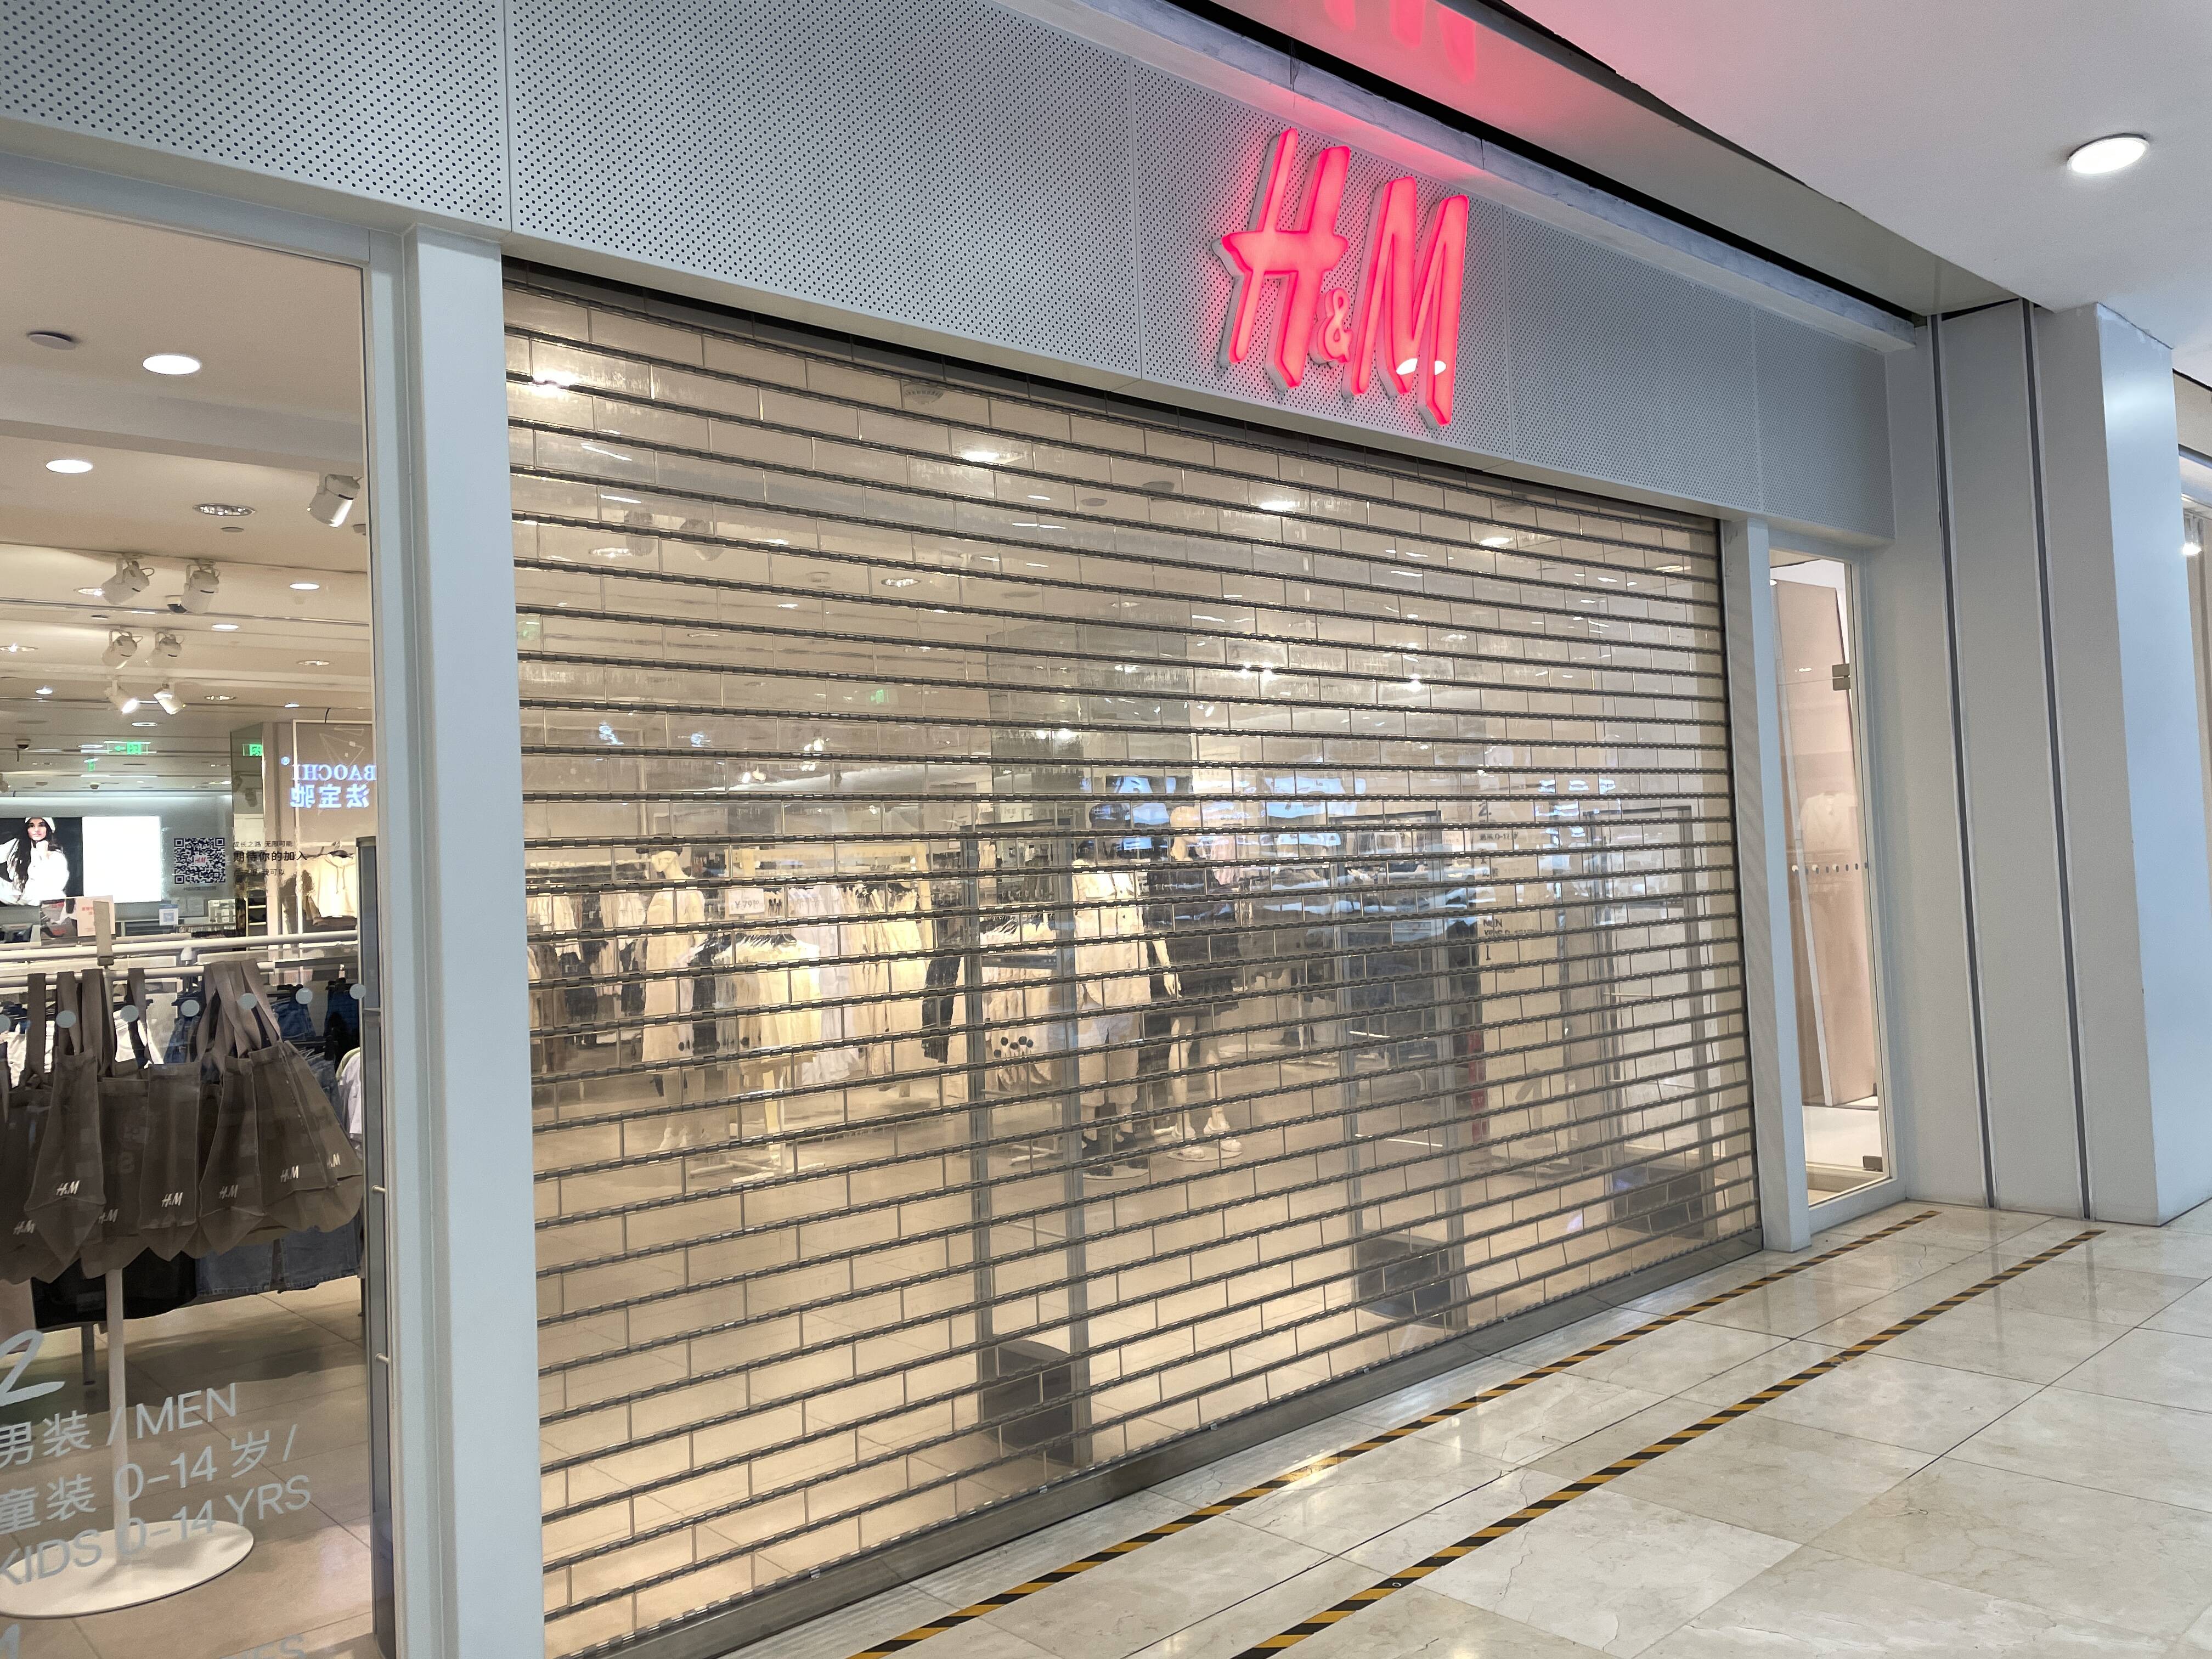 济南一商场H&M店铺暂停营业 相关大屏广告已下架